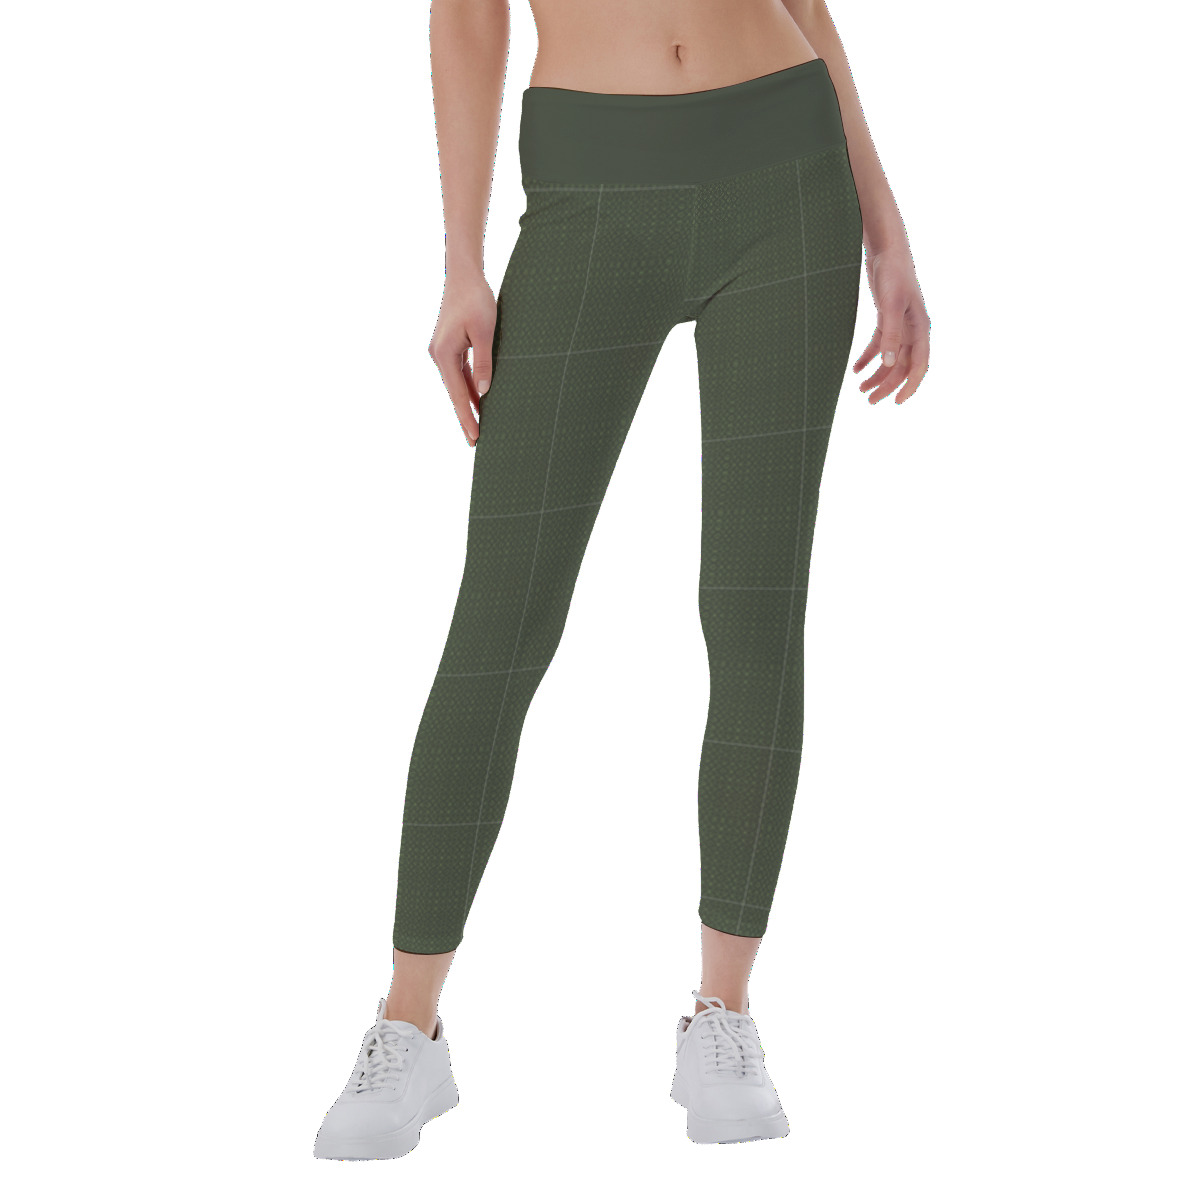 Green Pattern - All-Over Print Women's Yoga Leggings